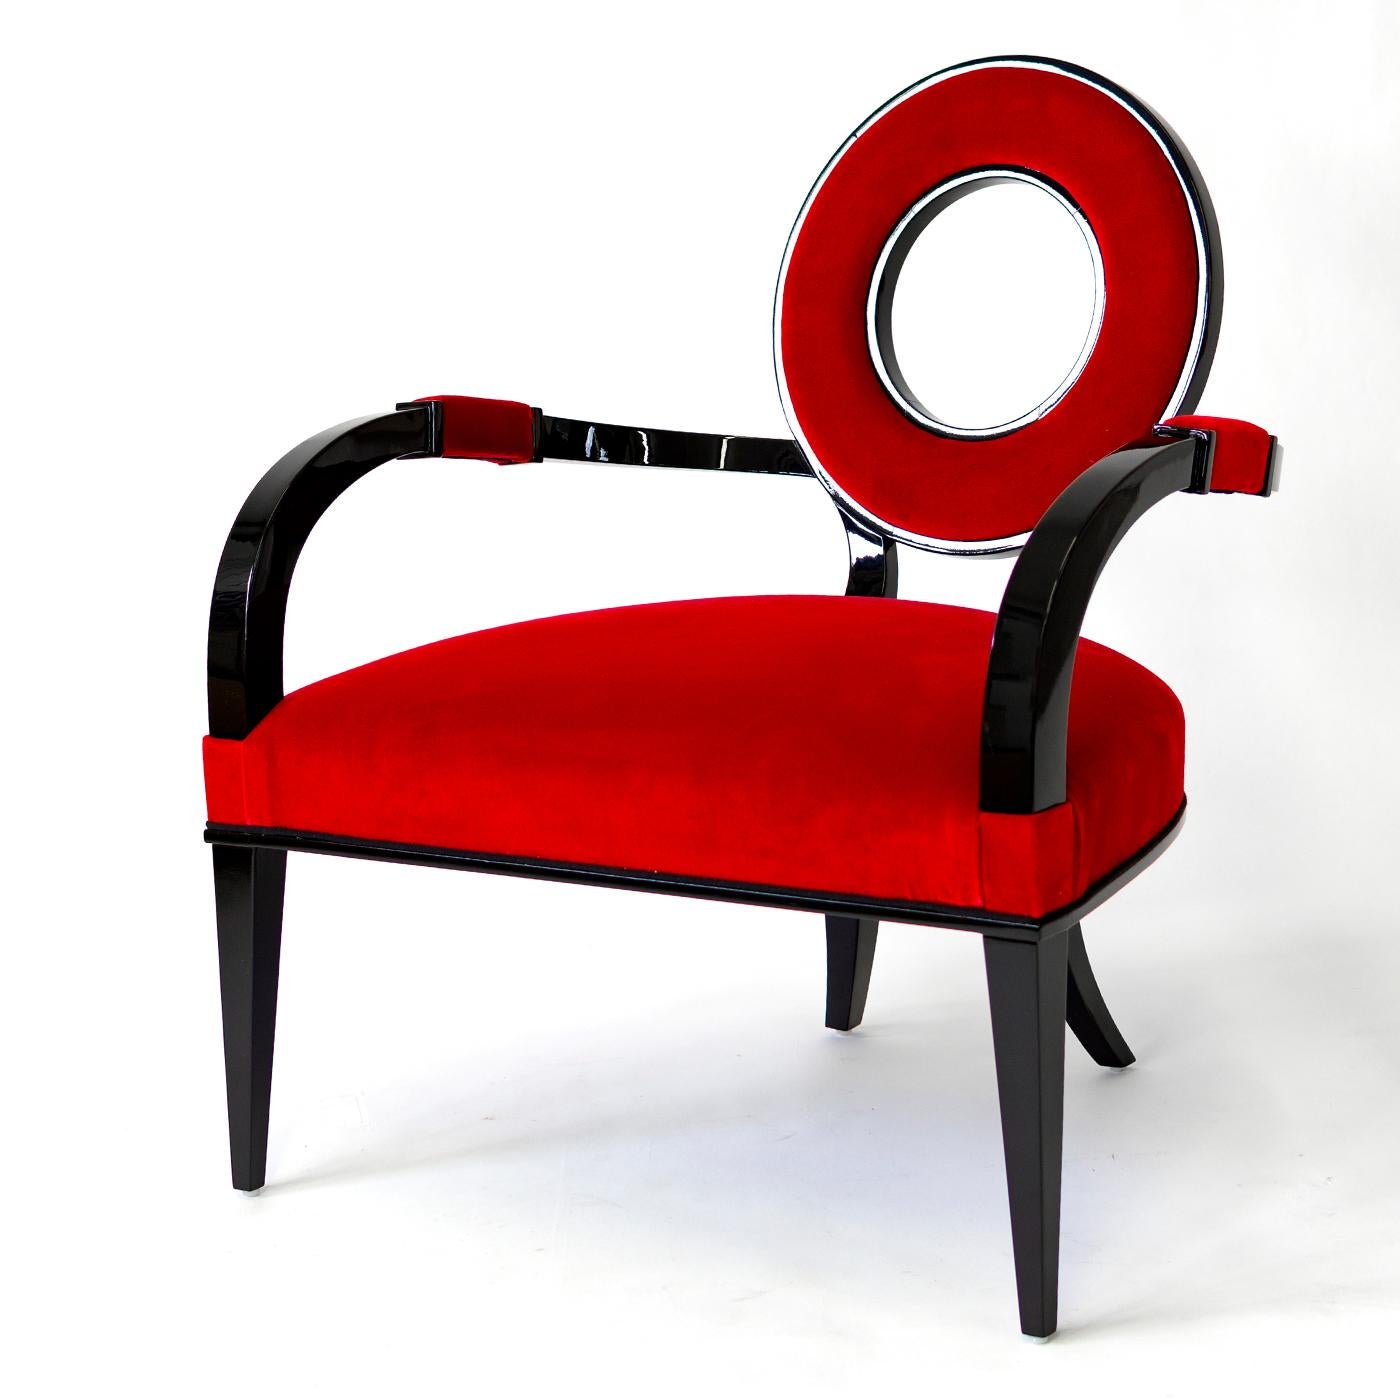 Dieser von G. Ventura entworfene Sessel zeichnet sich durch eine Neuinterpretation des Art-Deco-Stils mit modernen grafischen Details aus, die seine zeitlose Eleganz unterstreichen. Die skulpturale Silhouette zeichnet sich durch eine einzigartige